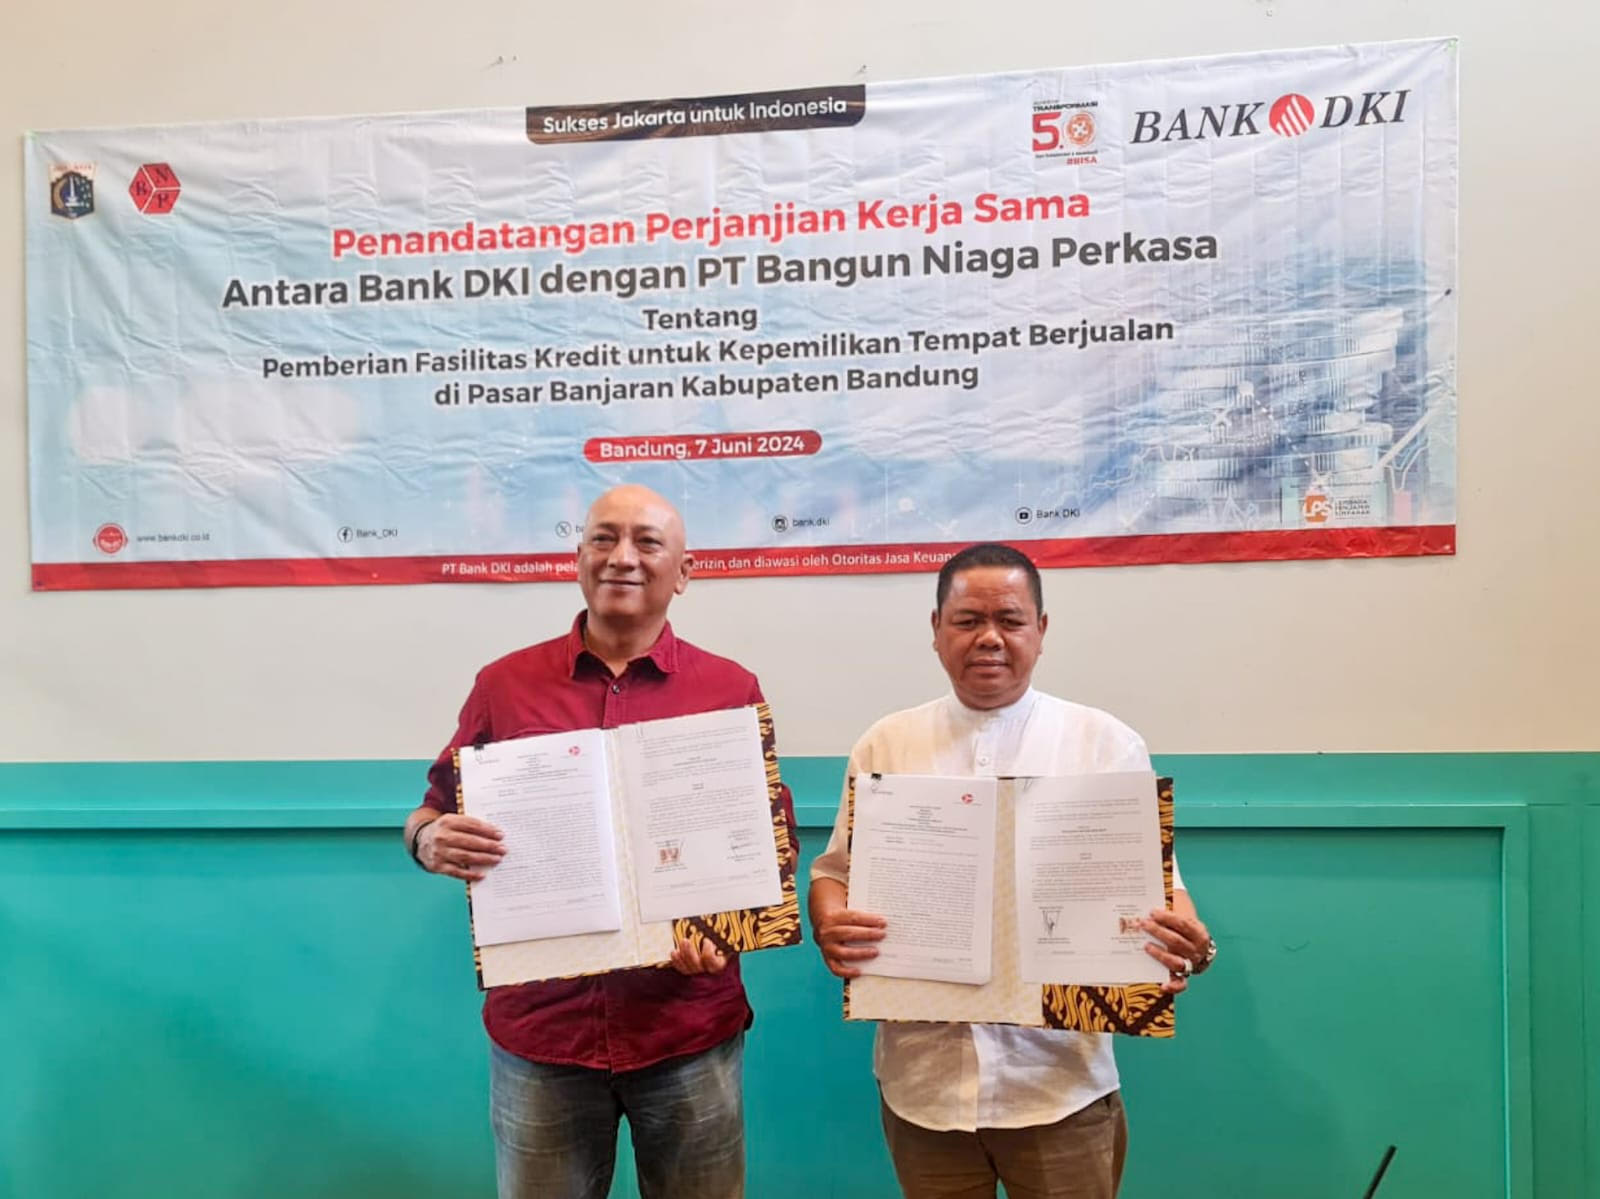 Bank DKI bekerja sama dengan PT Bangun Niaga Perkasa untuk memberikan kredit untuk membeli kjios di Pasar Sehat Banjaran. (Foto/Bank DKI)